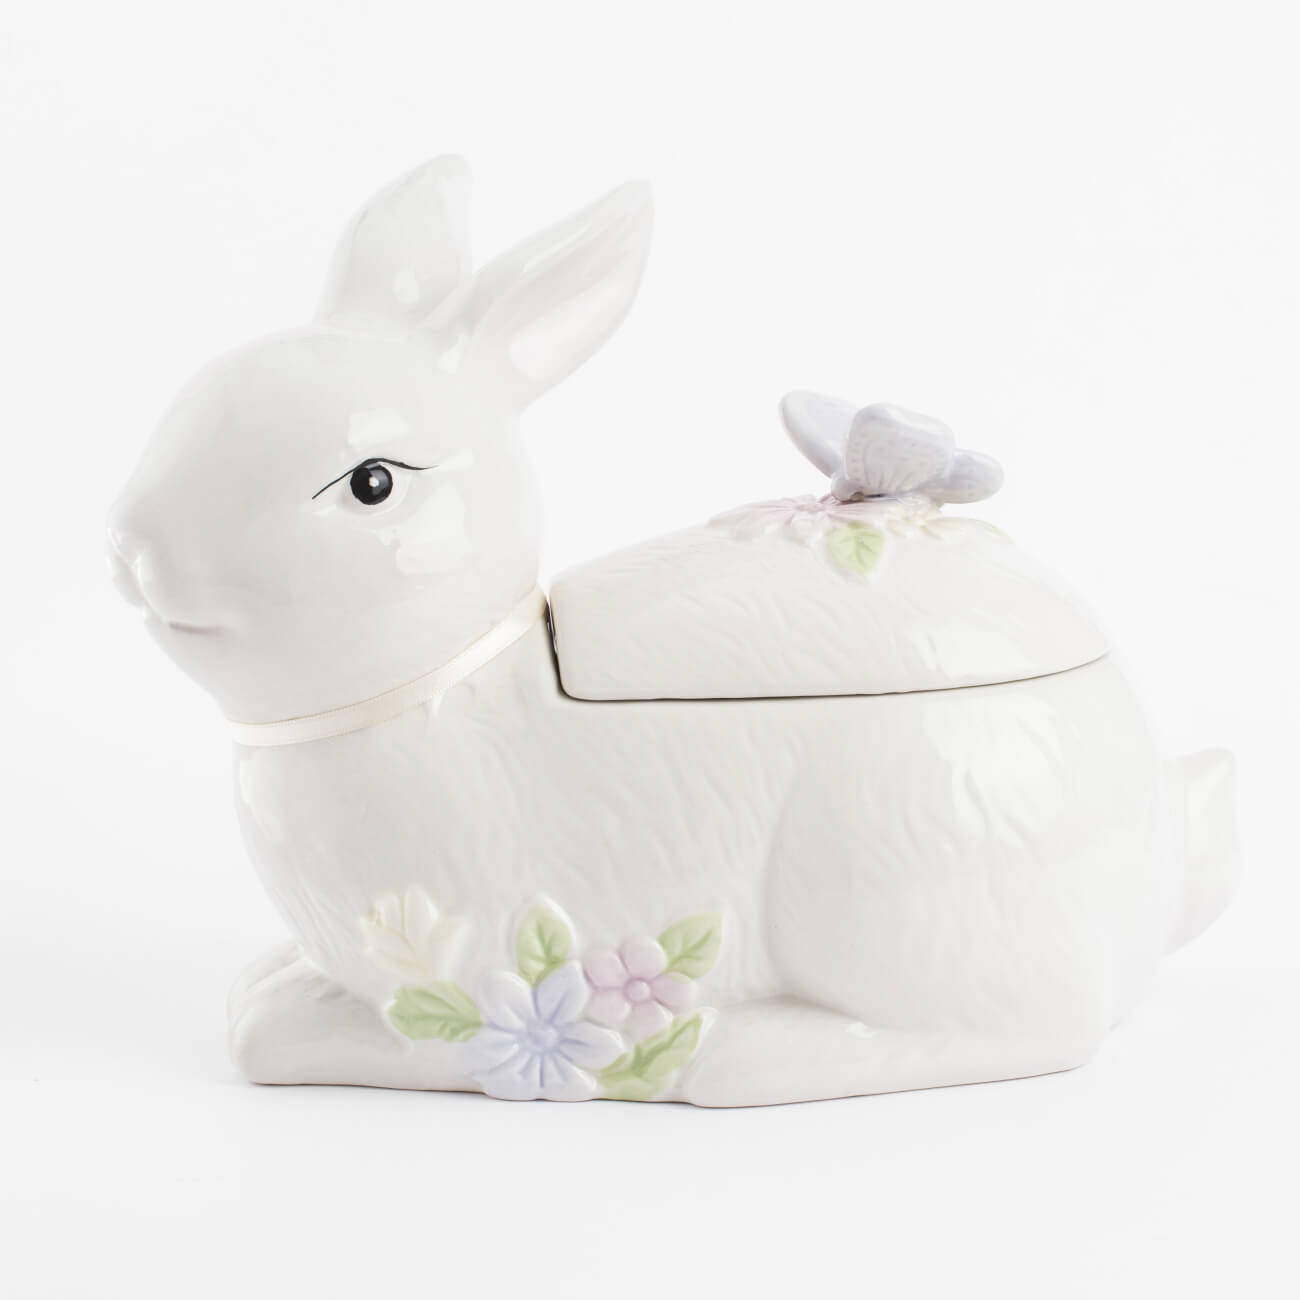 Емкость для хранения, 25х19 см, 1,1 л, керамика, белая, Кролик с бабочкой, Easter емкость для хранения 12х20 см 500 мл керамика кролик с букетом ов pure easter